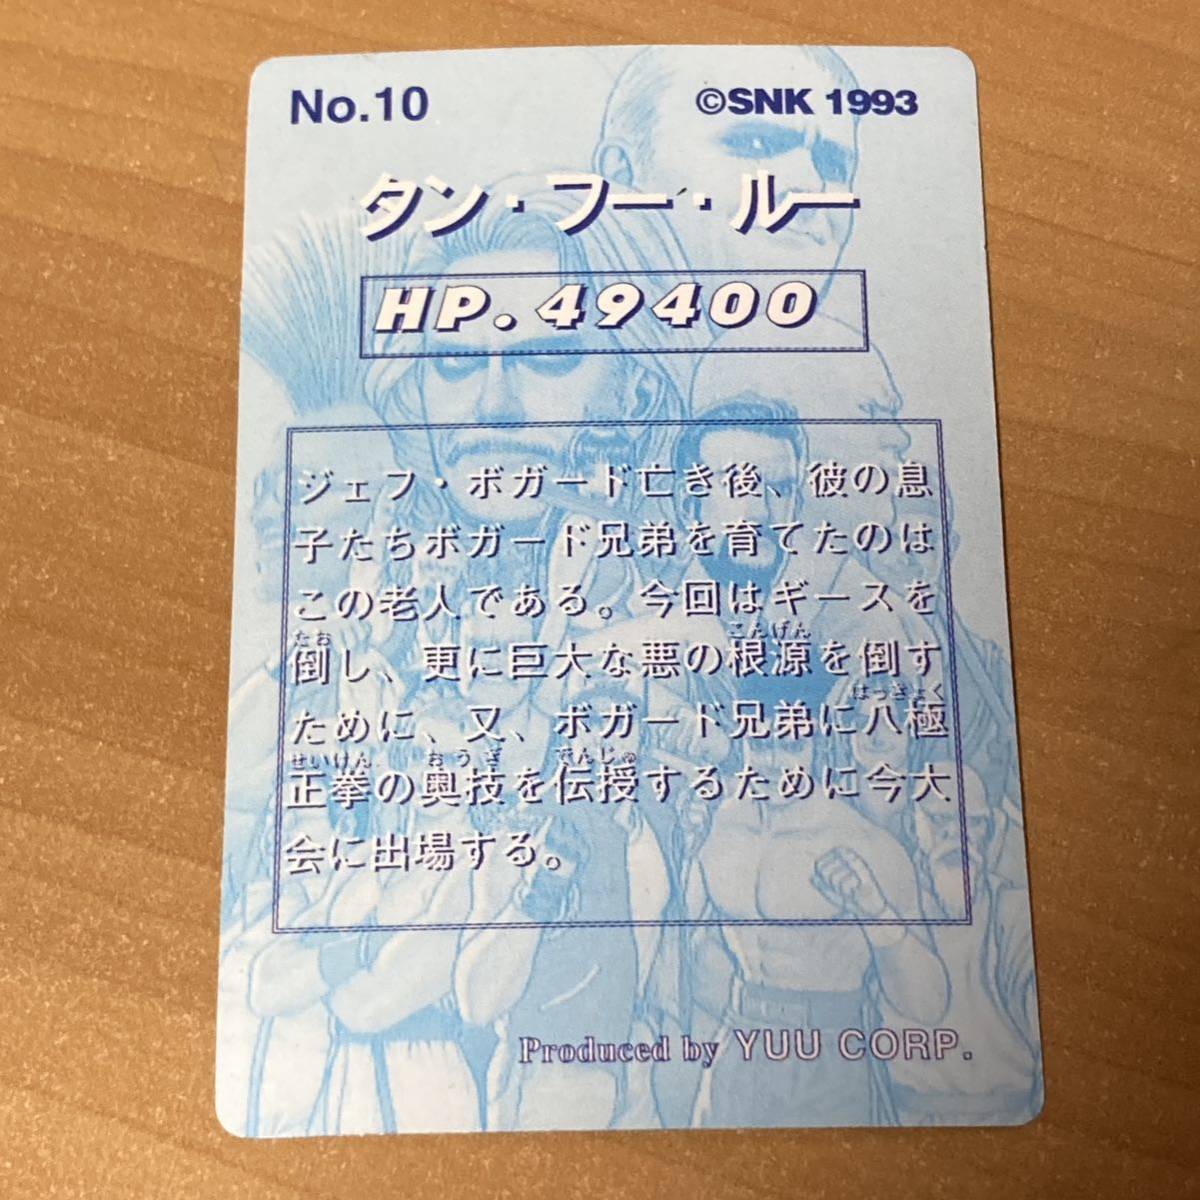 [美品] 餓狼伝説SPECIAL タンフールー No.10 カードダス キラ 1993 SNK CR A57_画像4